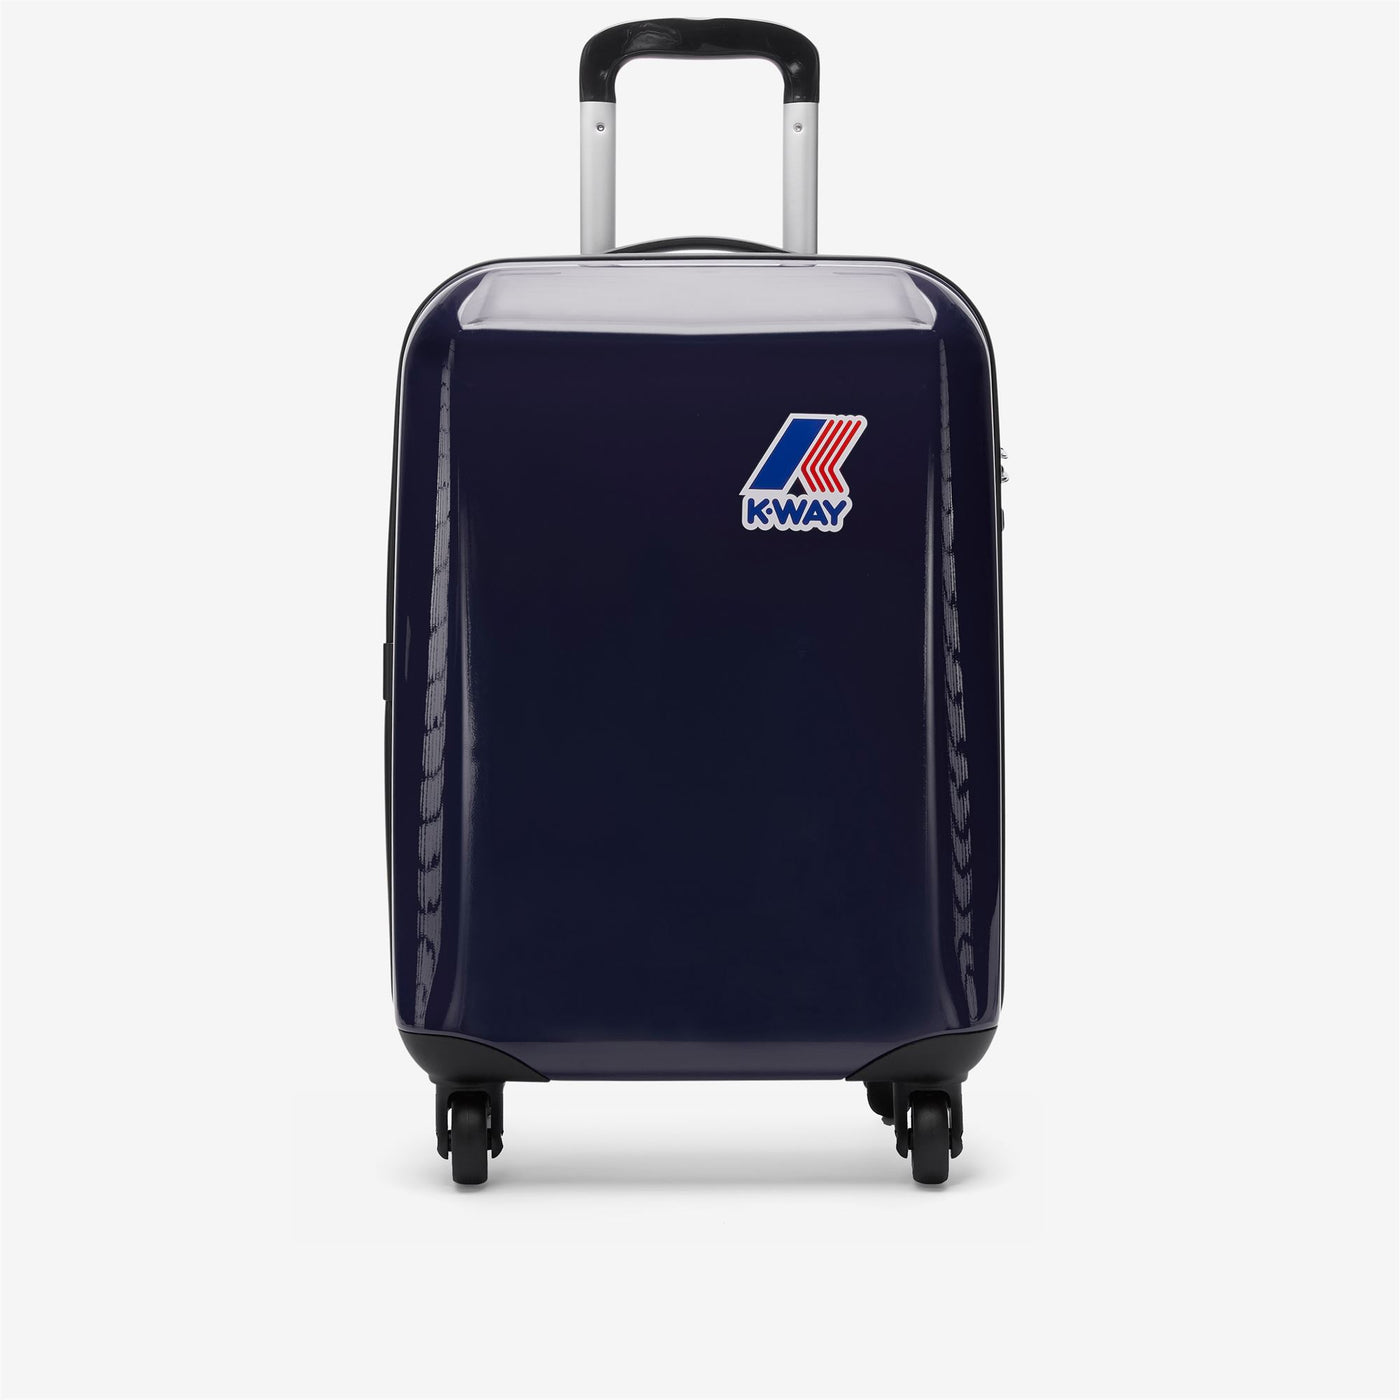 Luggage Bags Unisex K-WAY SYSTEM MINI TROLLEY Trolley BLUE ROYAL - BLACK TORBA Photo (jpg Rgb)			